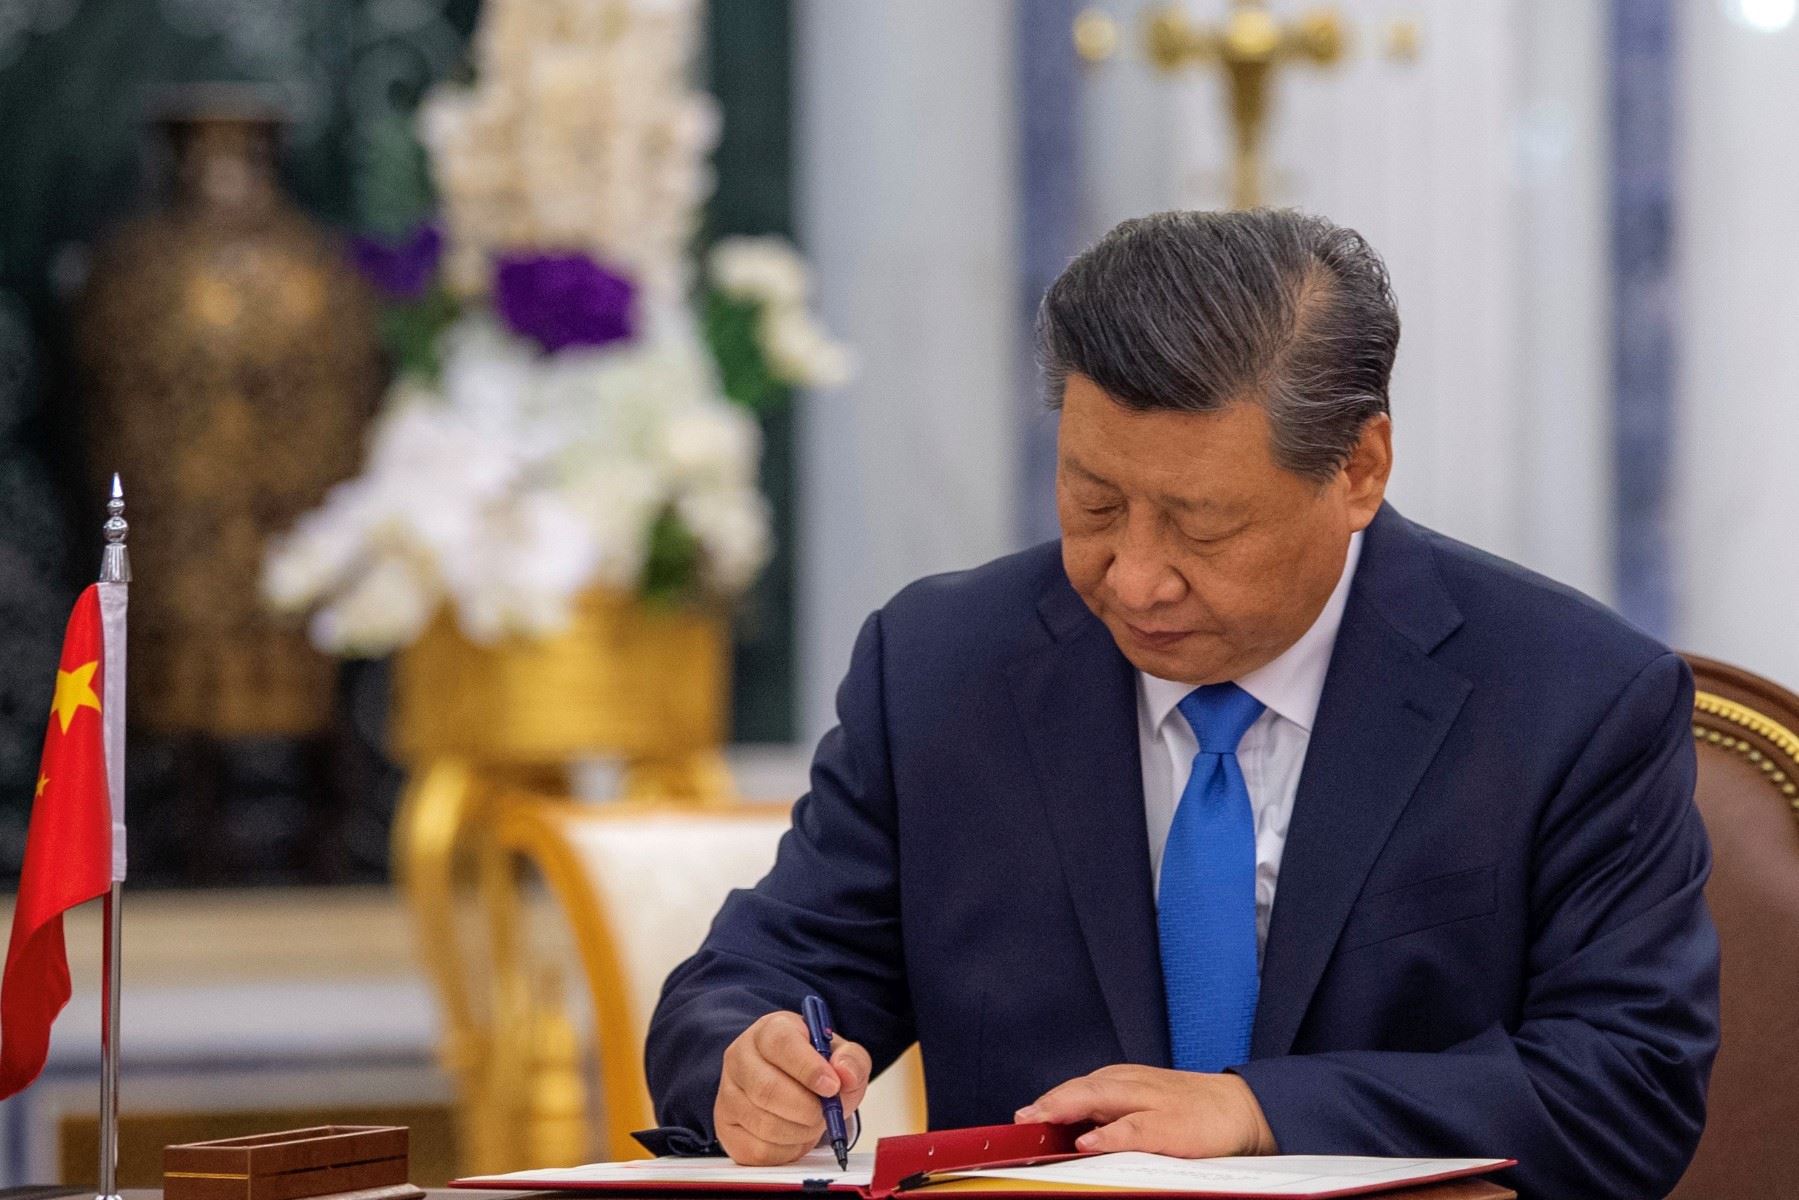 اتفاقيات بمليارات الدولارات خلال زيارة الرئيس الصيني للسعودية
